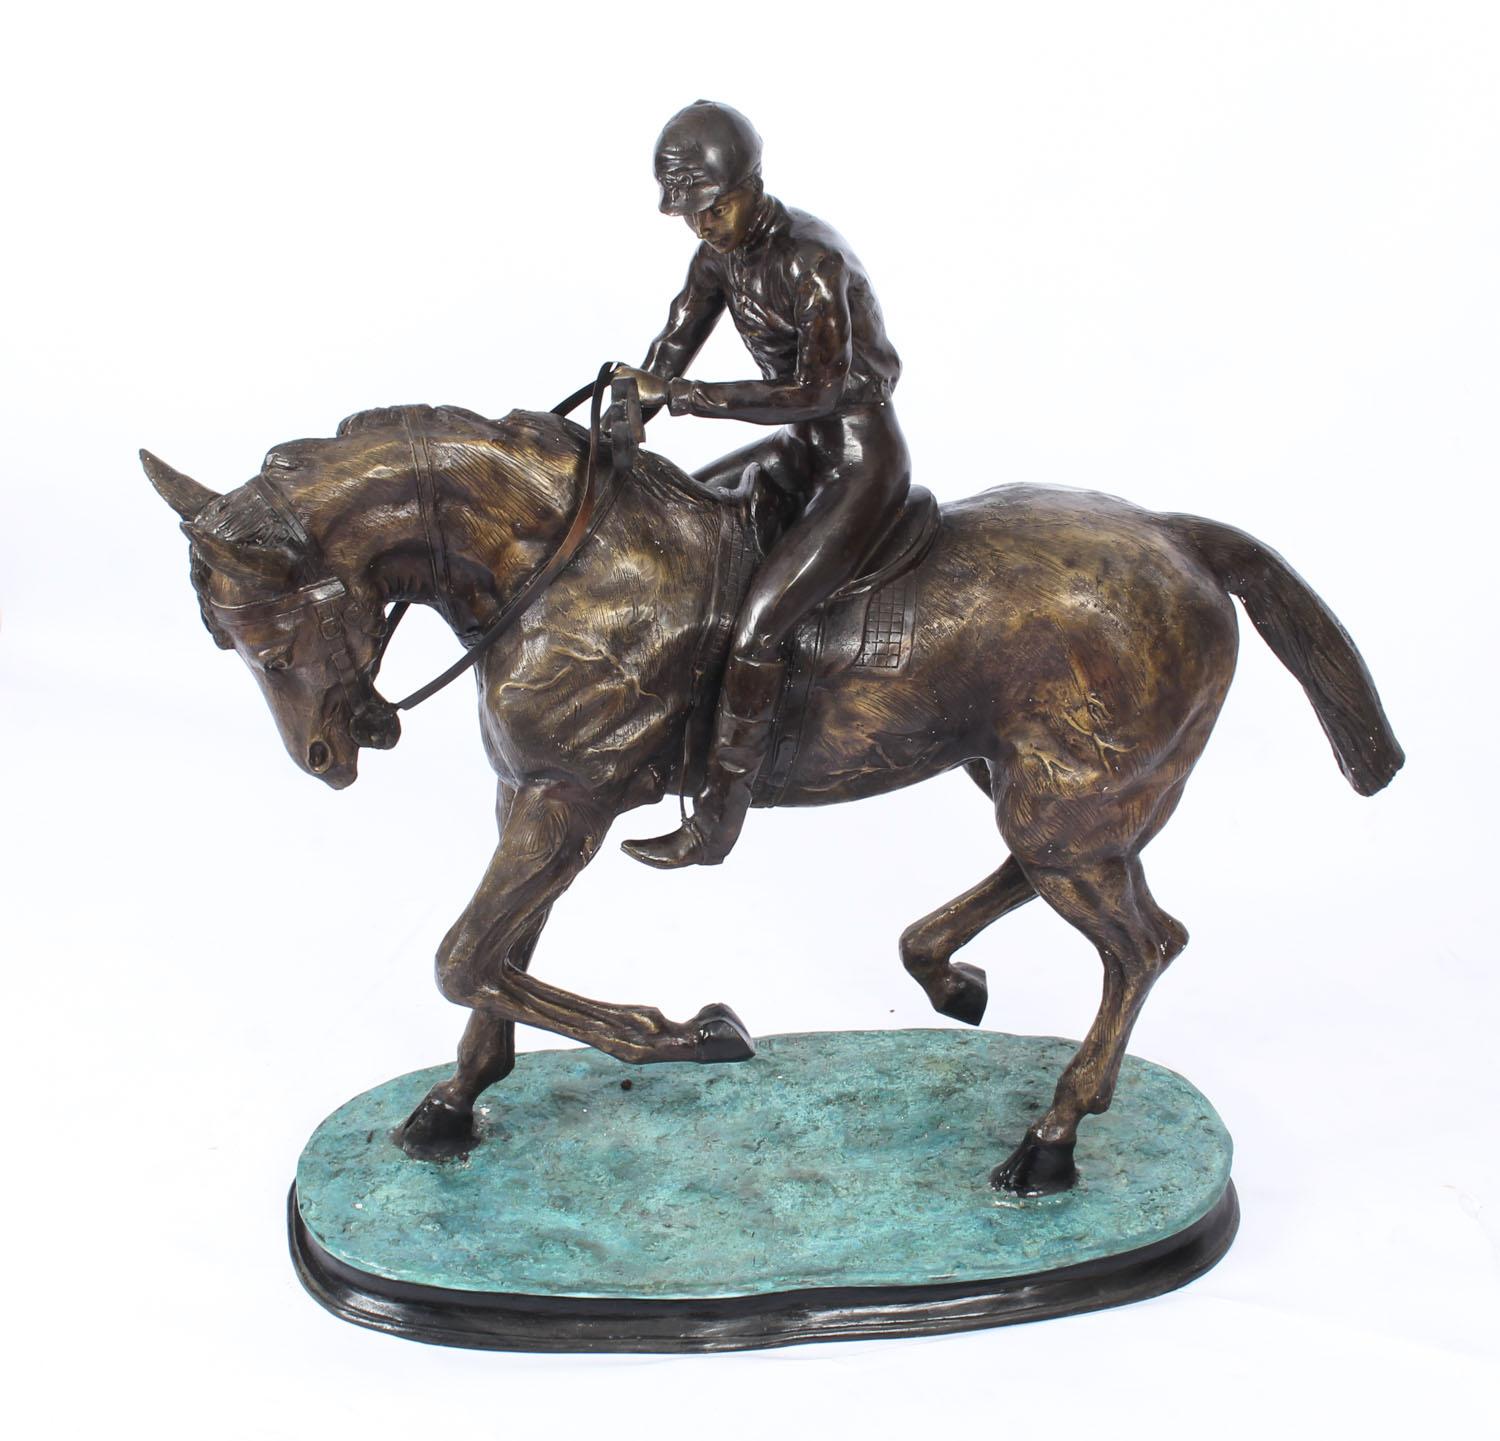 Il s'agit d'une magnifique sculpture en bronze représentant un cheval et un jockey d'après Pierre Jules Mene', datant de la seconde moitié du 20e siècle.

Cette sculpture étonnante a une définition détaillée, présente le cheval et le jockey en